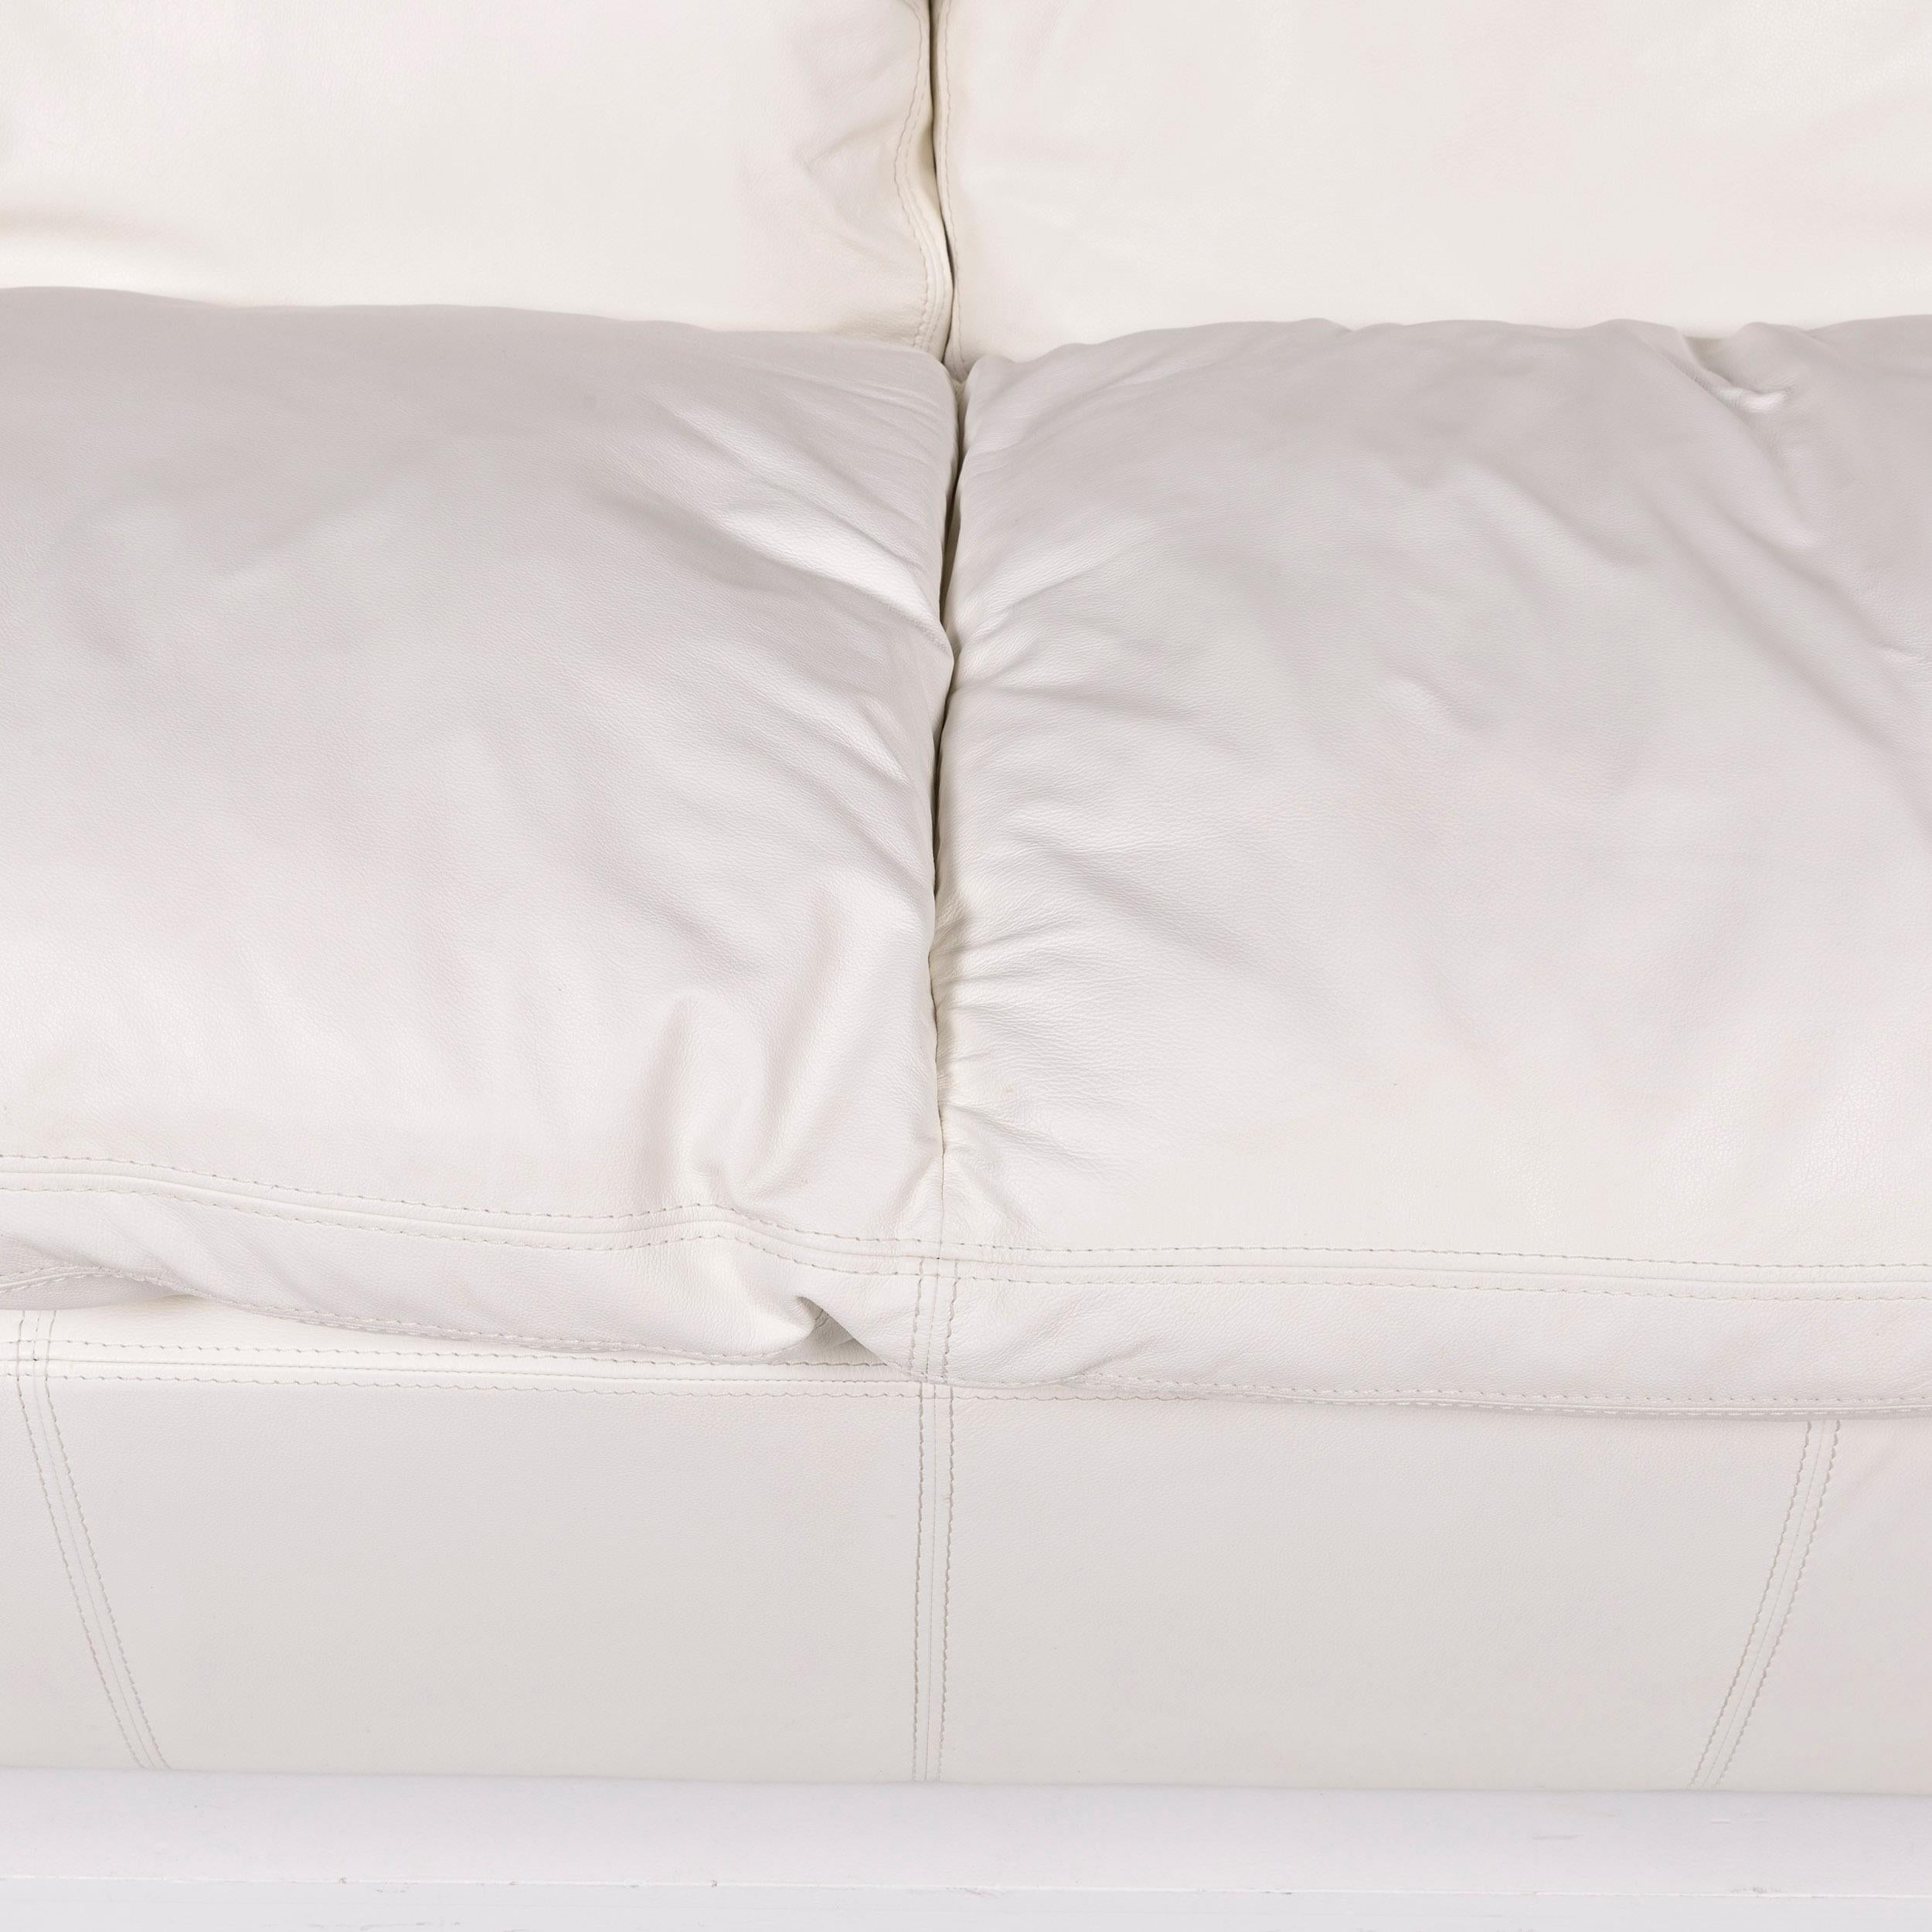 Nieri Leather Sofa Set White 1 Three-Seat 1 Two-Seat 8